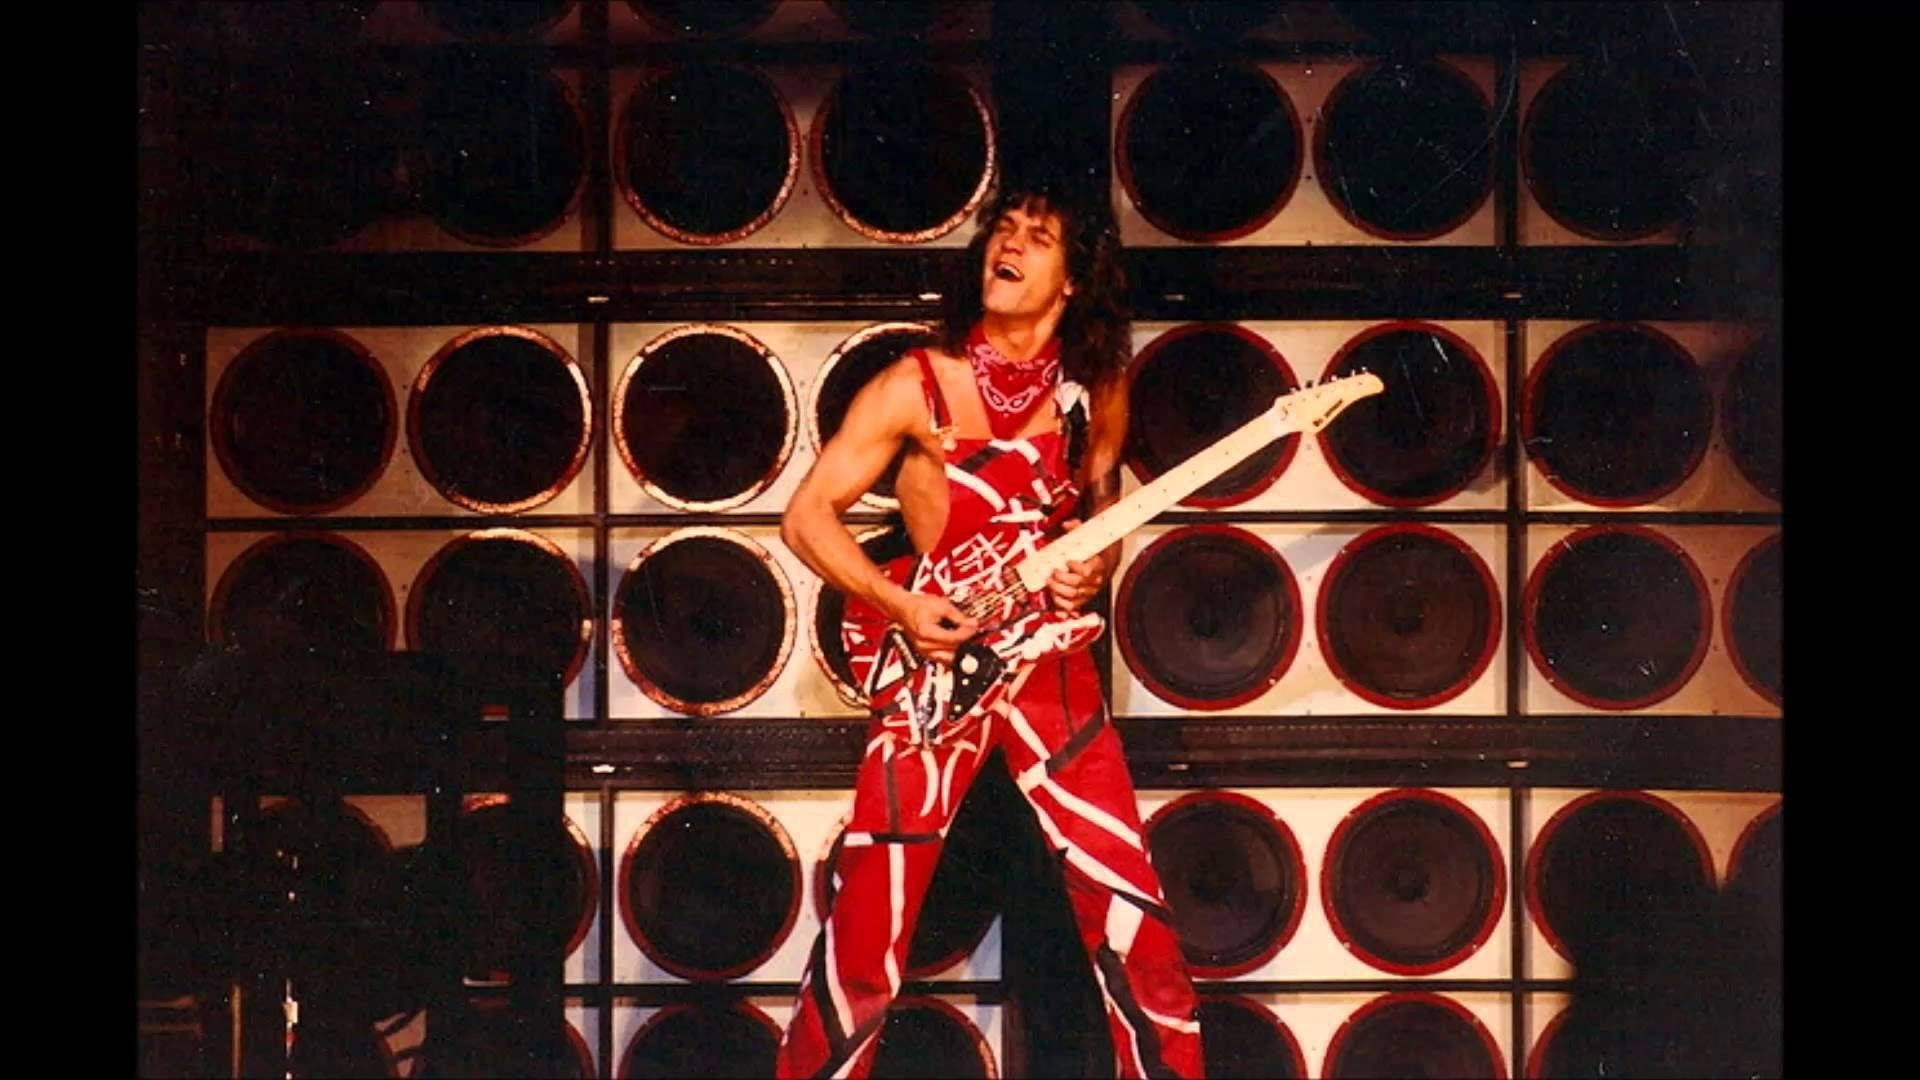 Caption: Eddie Van Halen Rocking On Stage